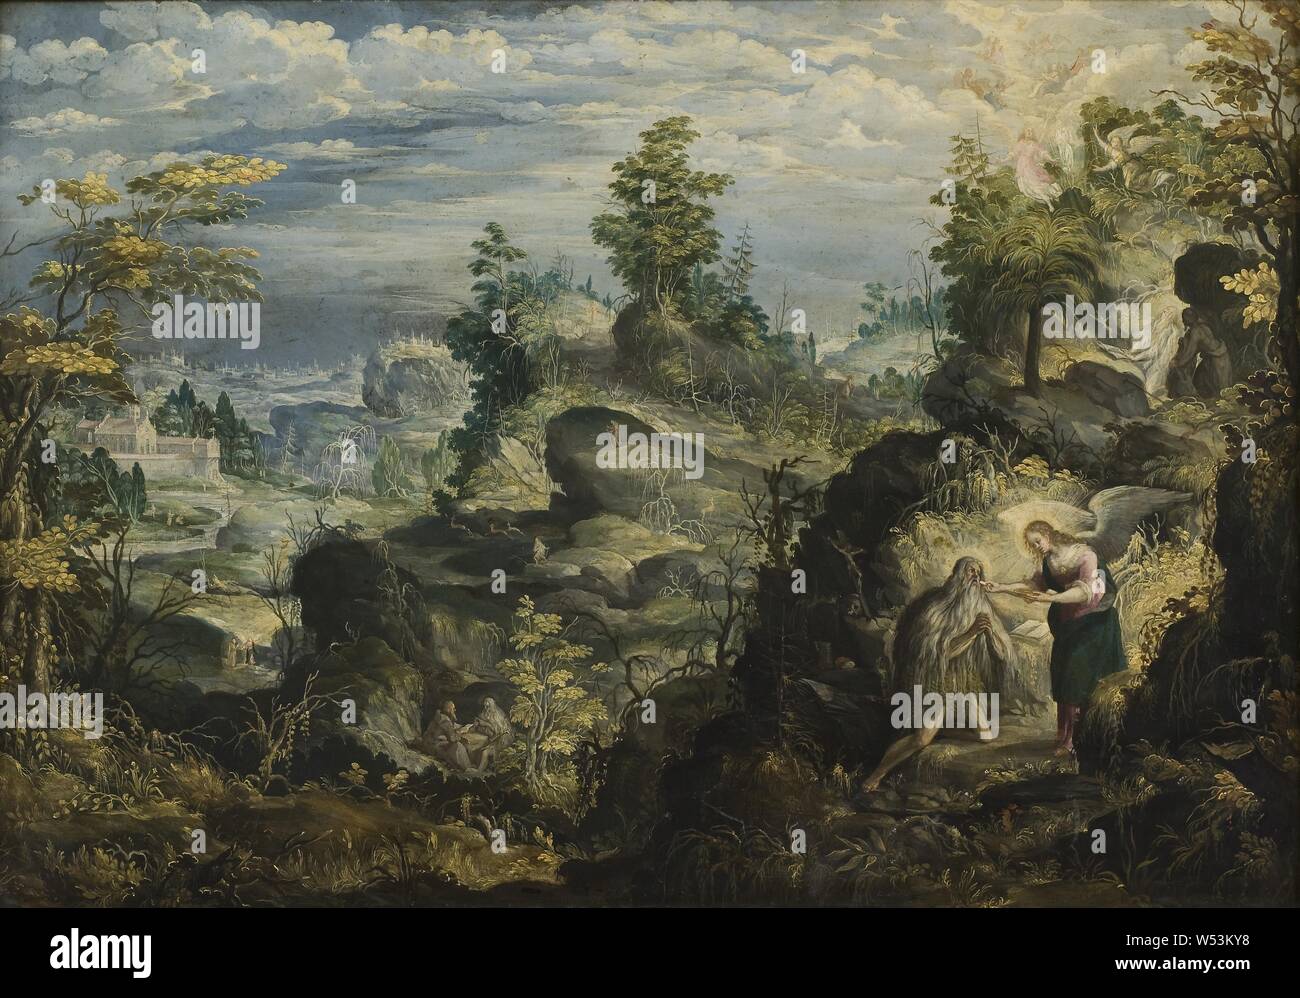 Antonín Stevens, der Eremit Onofrius in der Wüste, der Eremit Onofrius in einer unwirtlichen Landschaft, Malerei, 1641, Öl auf Kupfer, Höhe 41 cm (16,1 Zoll), Breite 58 cm (22,8 Zoll), unterzeichnet, MAS 1641 Stockfoto